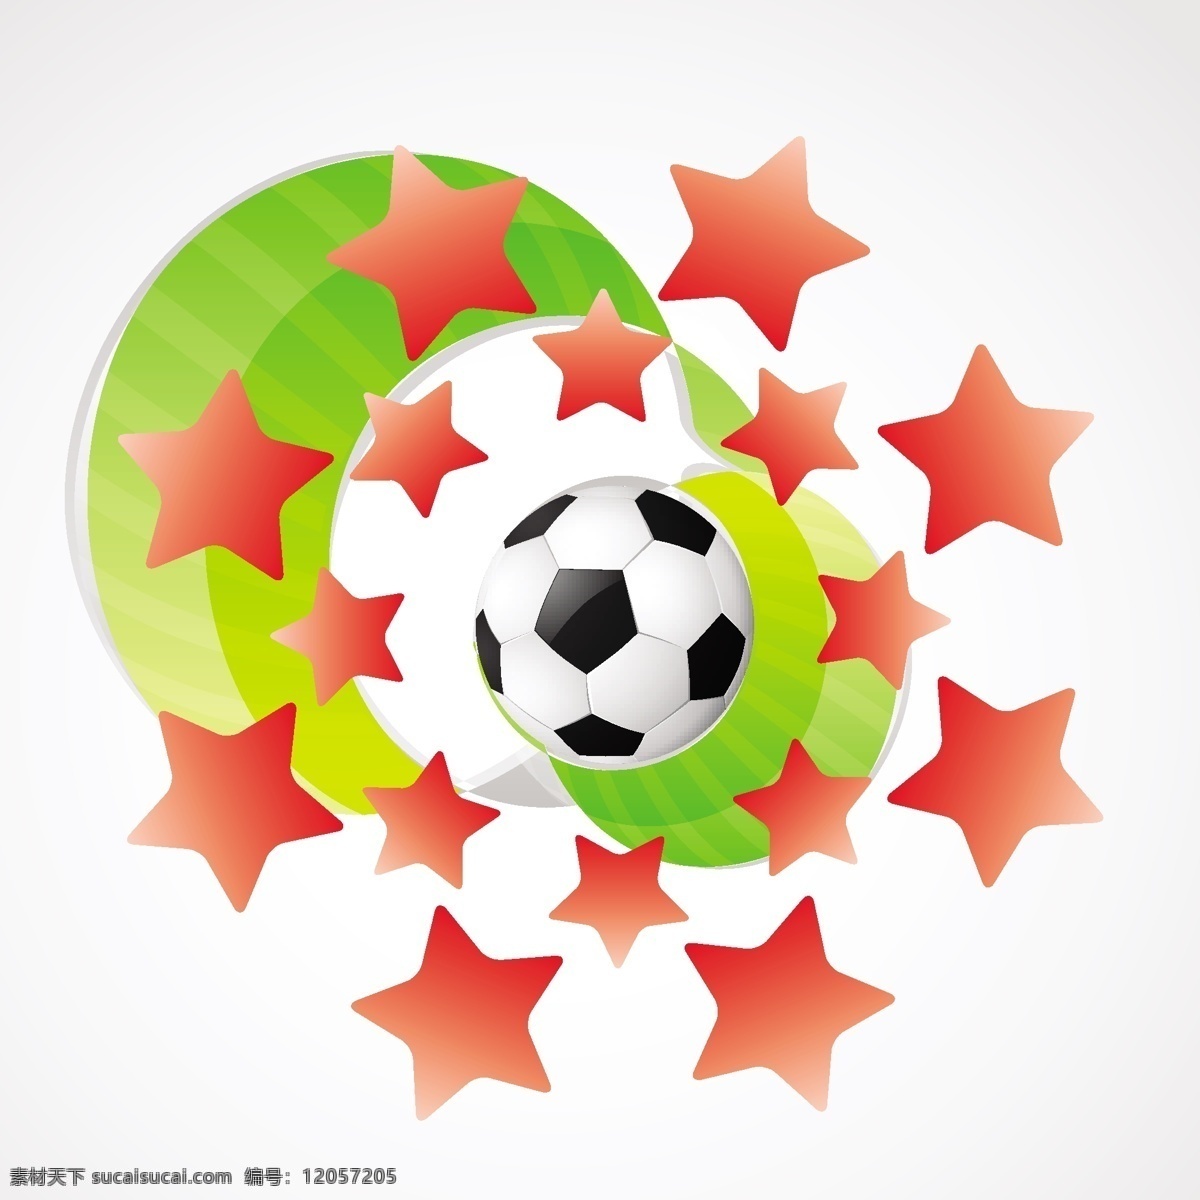 足球背景 足球 足球比赛 世界杯 足球素材 足球元素 潮流元素 动感足球 矢量 体育 休闲娱乐体育 文化艺术 体育运动